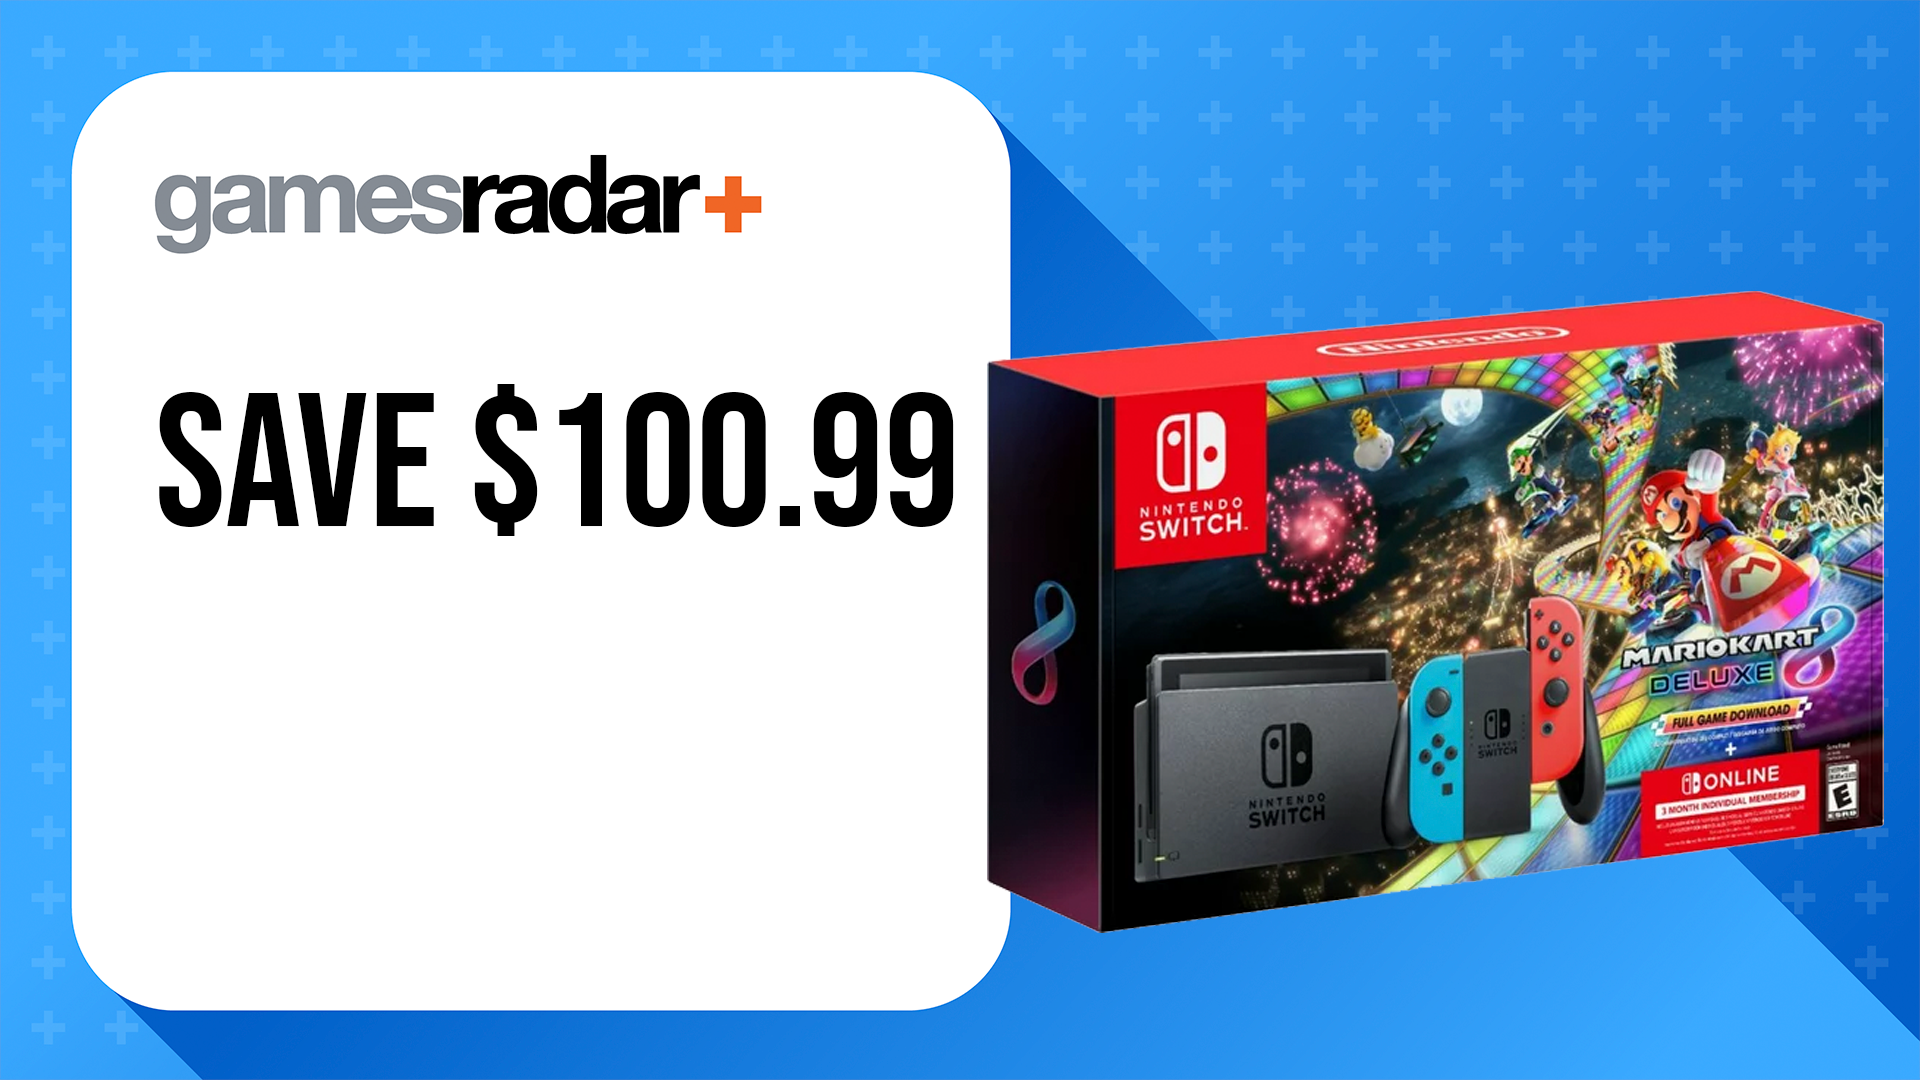 Nintendo Switch + Mario Kart 8 Deluxe + Nintendo Switch Online deal